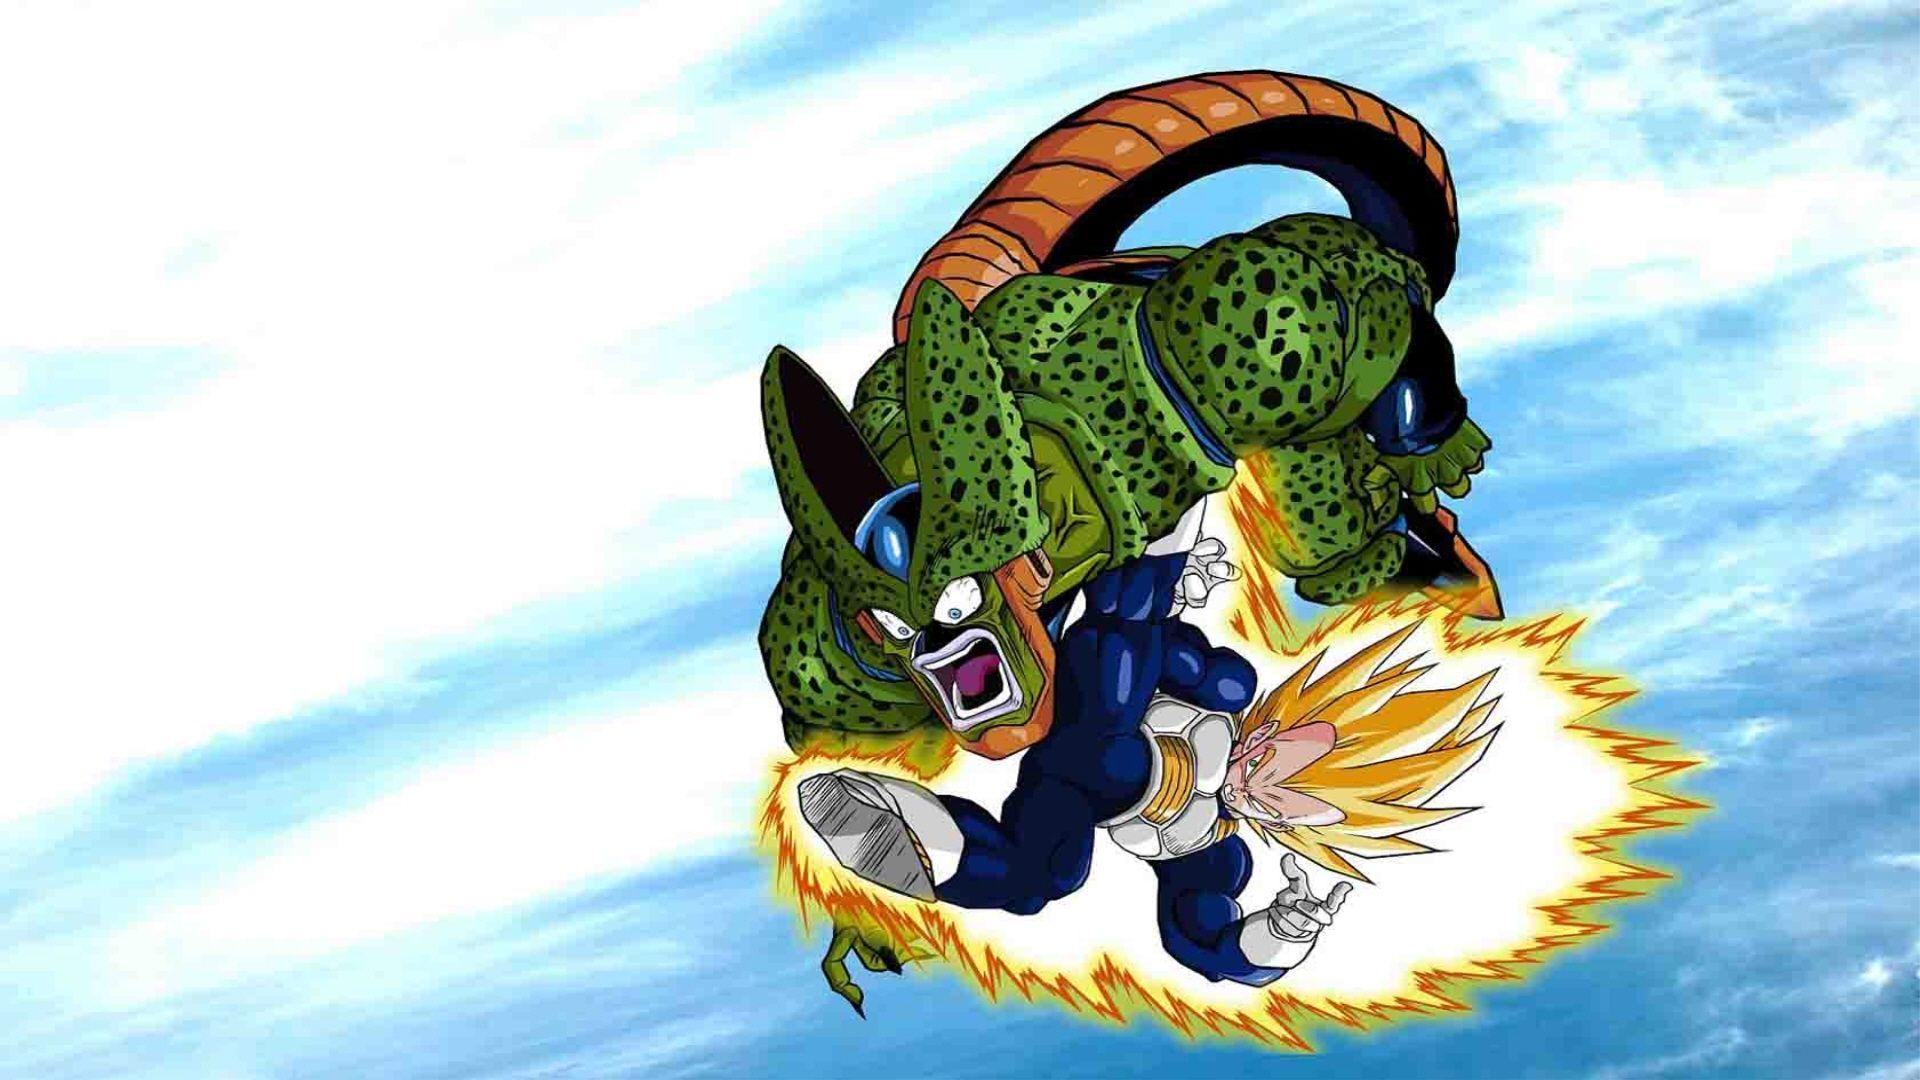 Dragon Ball Z Vegeta vs Cell Wallpaper. From dragonball to super